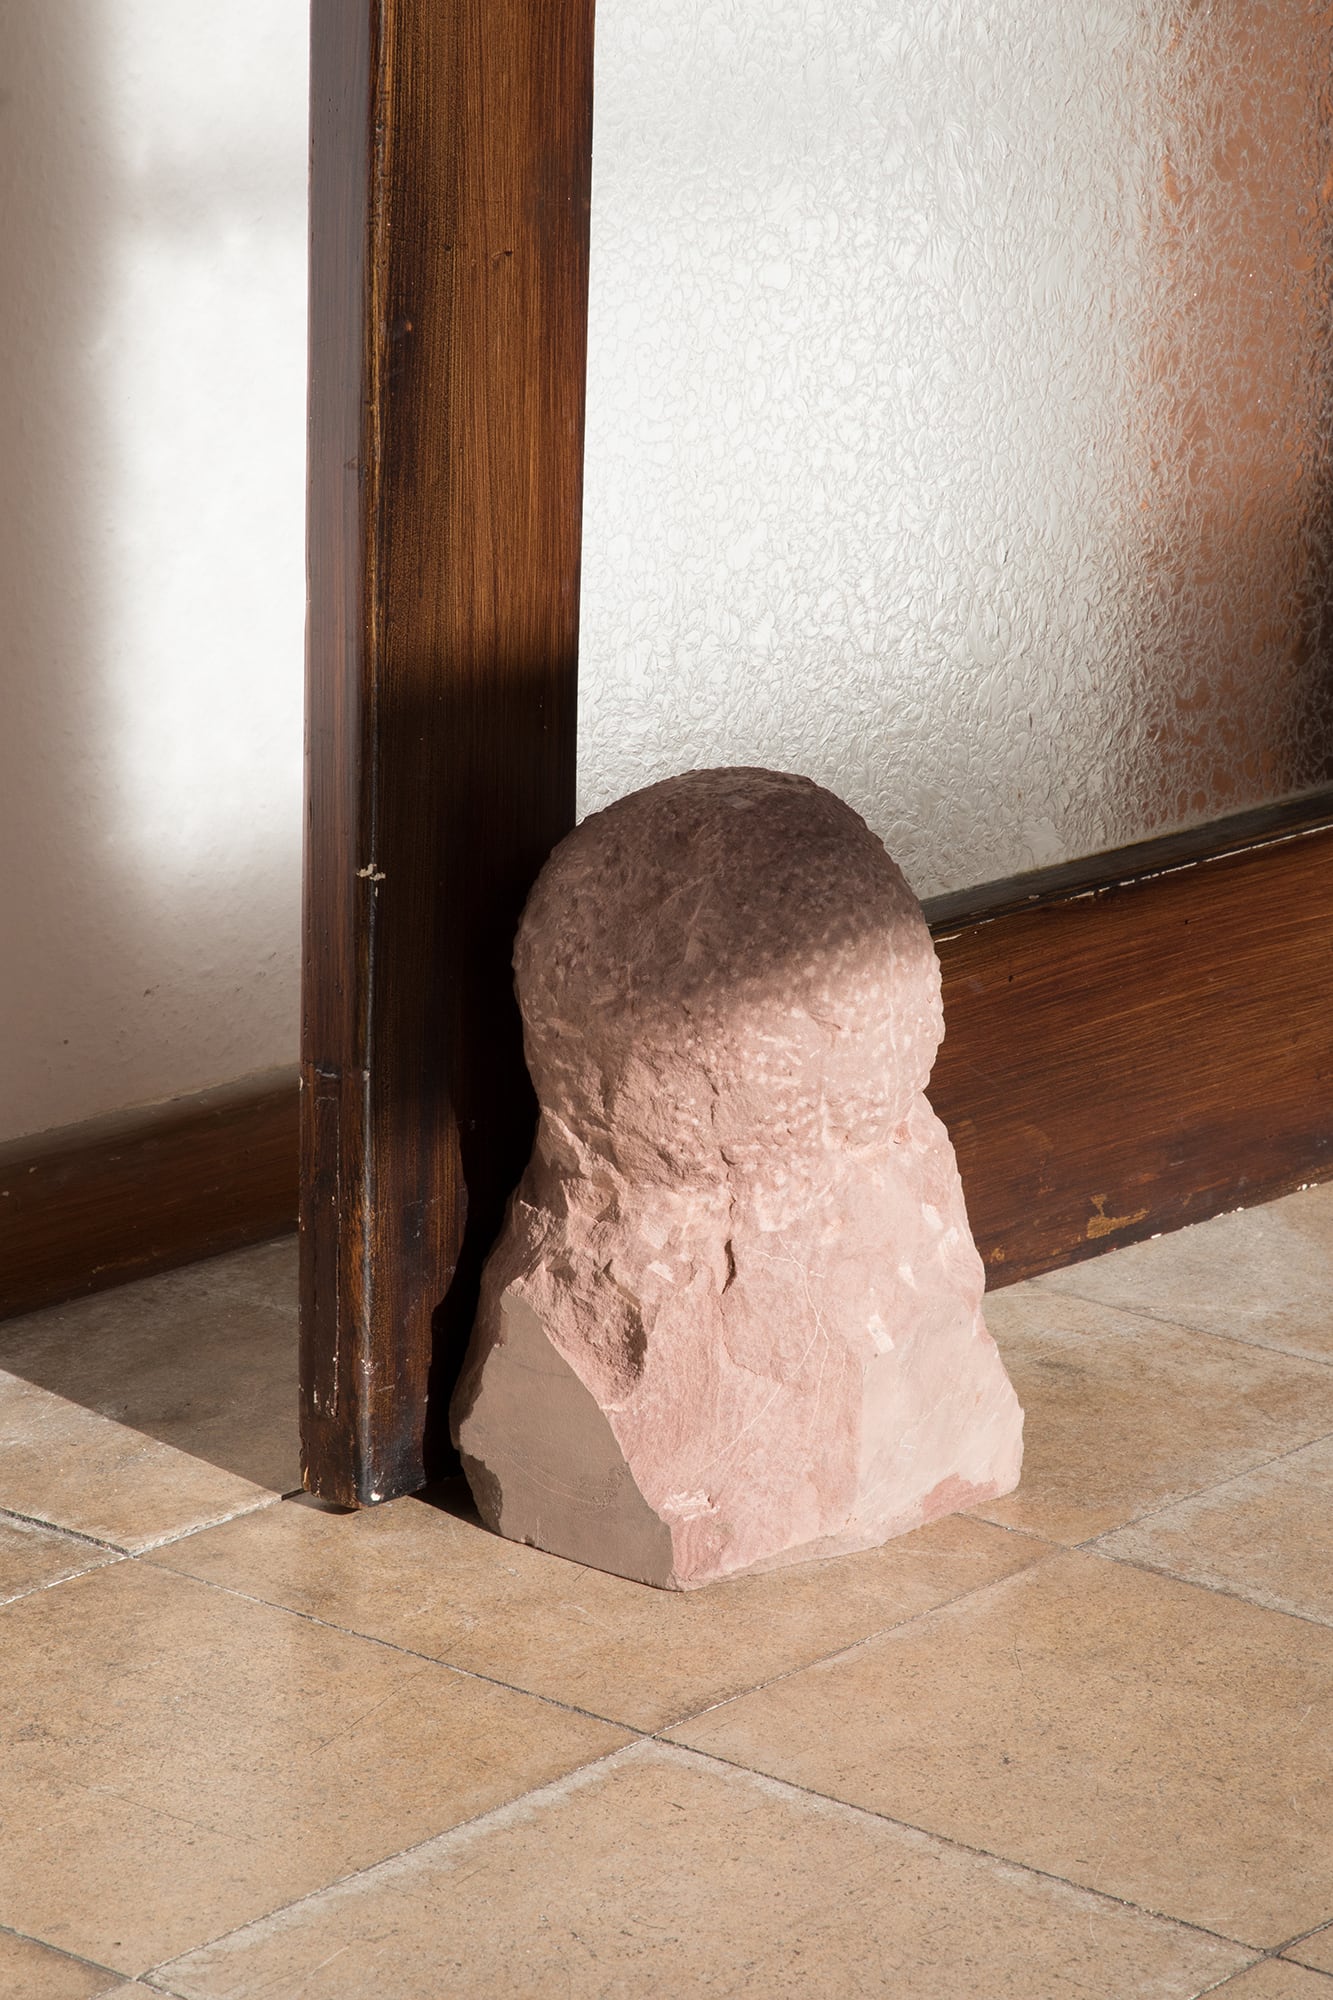 Jannis Zell, *Black Roll* 2, red sandstone, 20×25×40cm